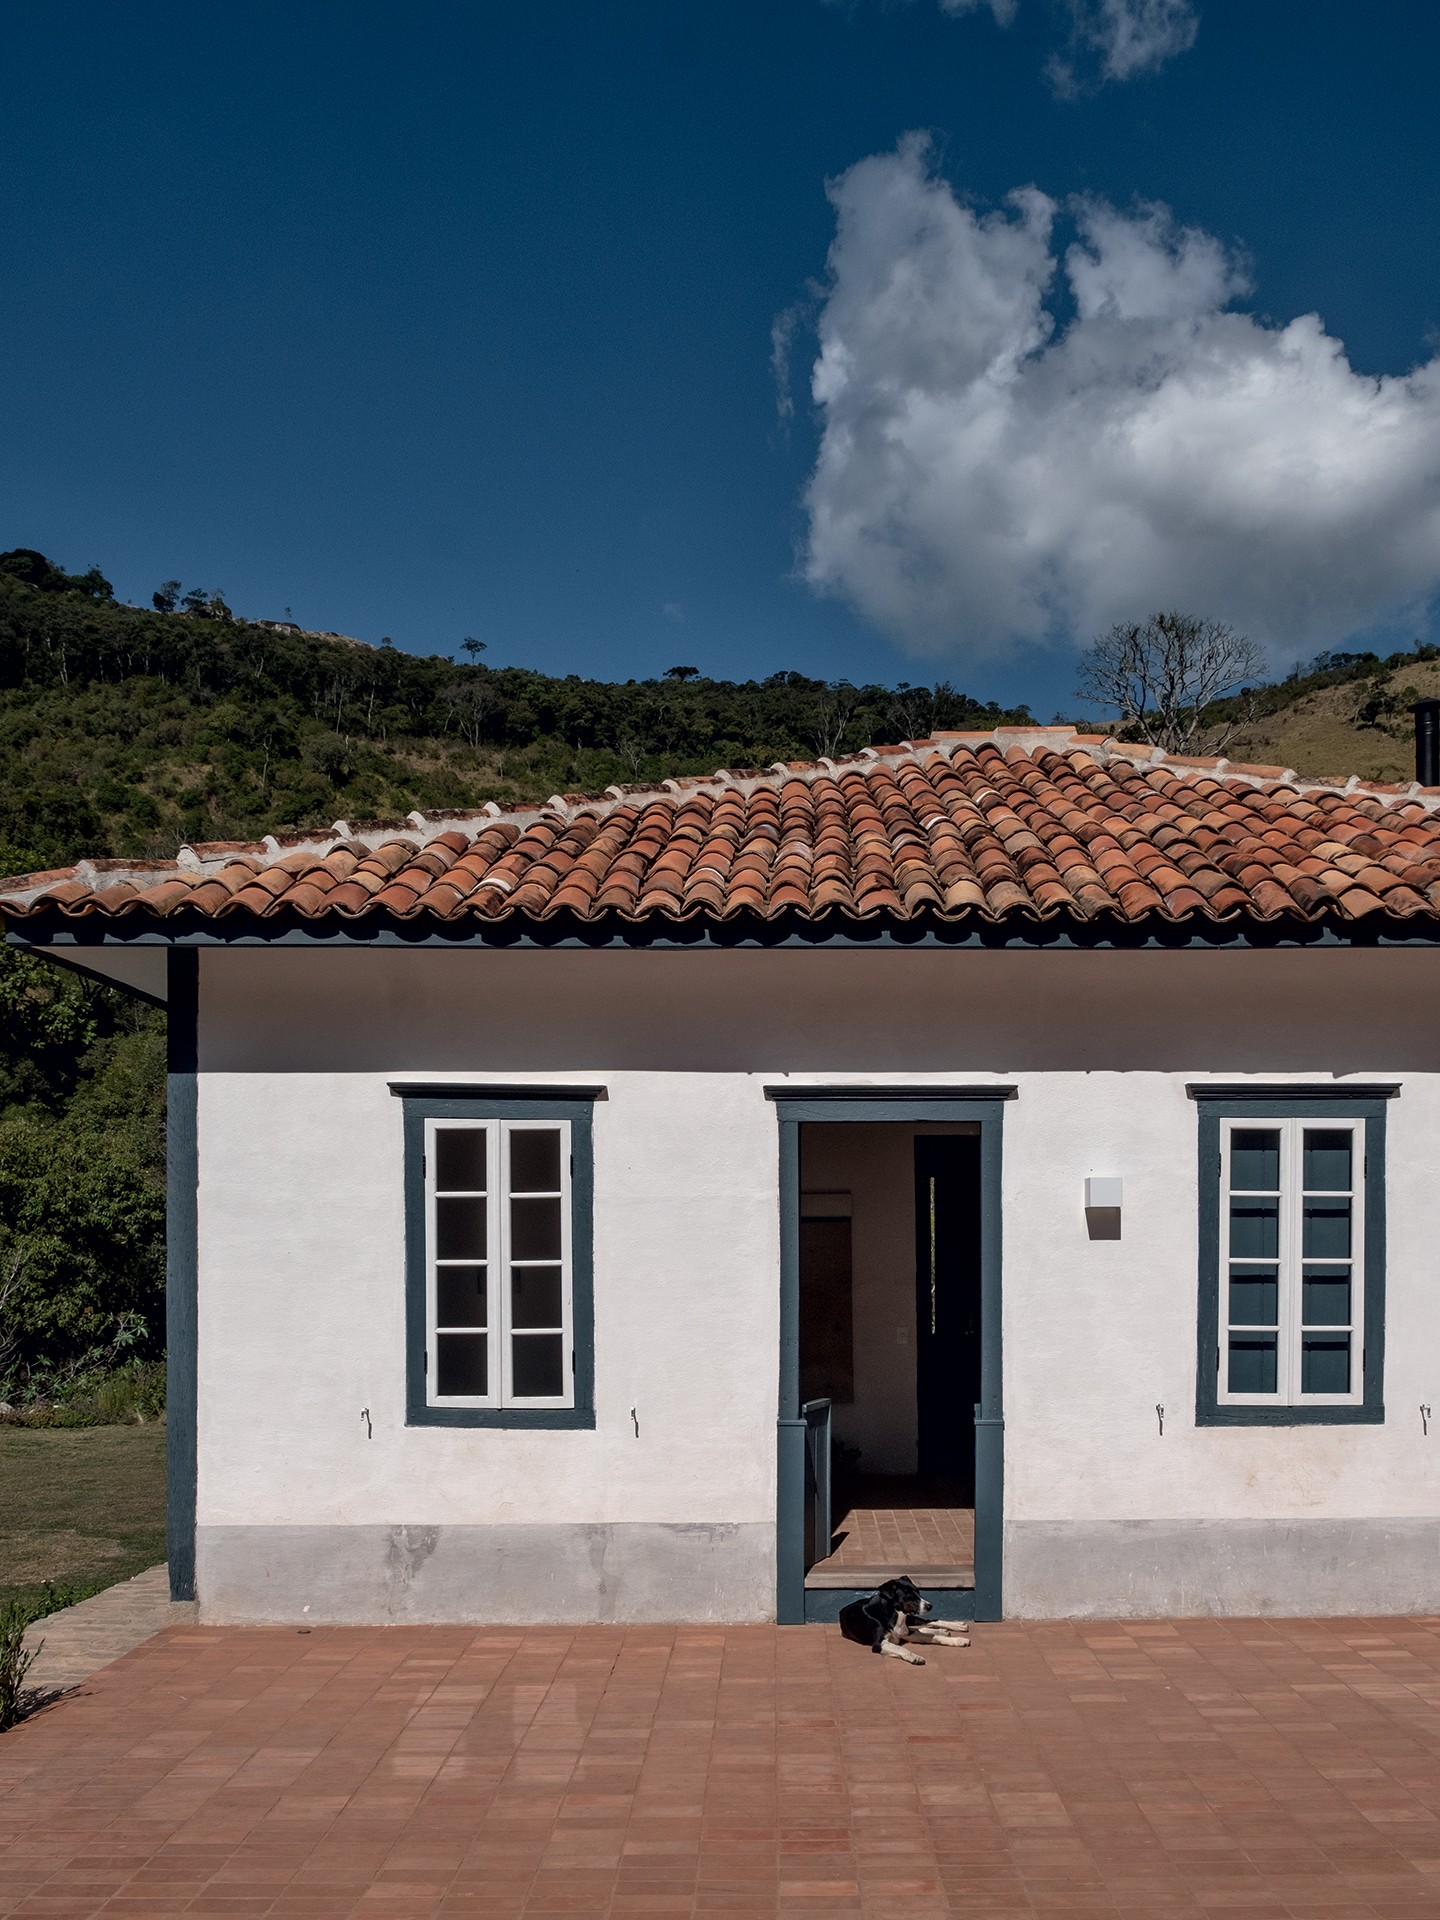 Restaurada, esta casa de pau a pique ganhou novos ares sem perder a história (Foto: Ruy Teixeira)